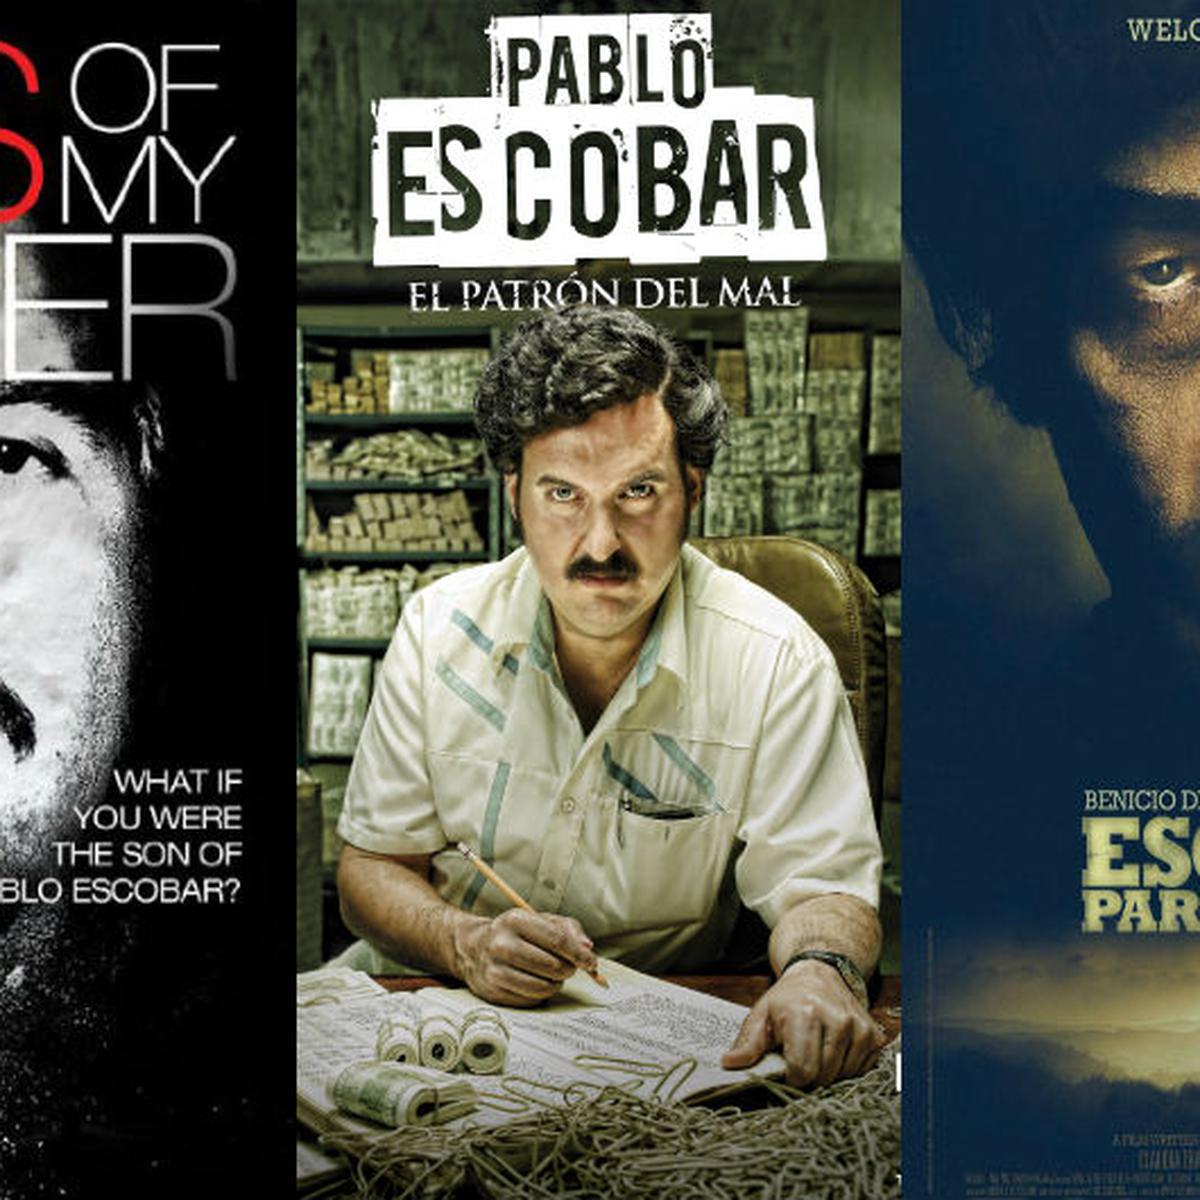 Pablo Escobar: Siete producciones cinematográficas sobre su vida |  TENDENCIAS | GESTIÓN